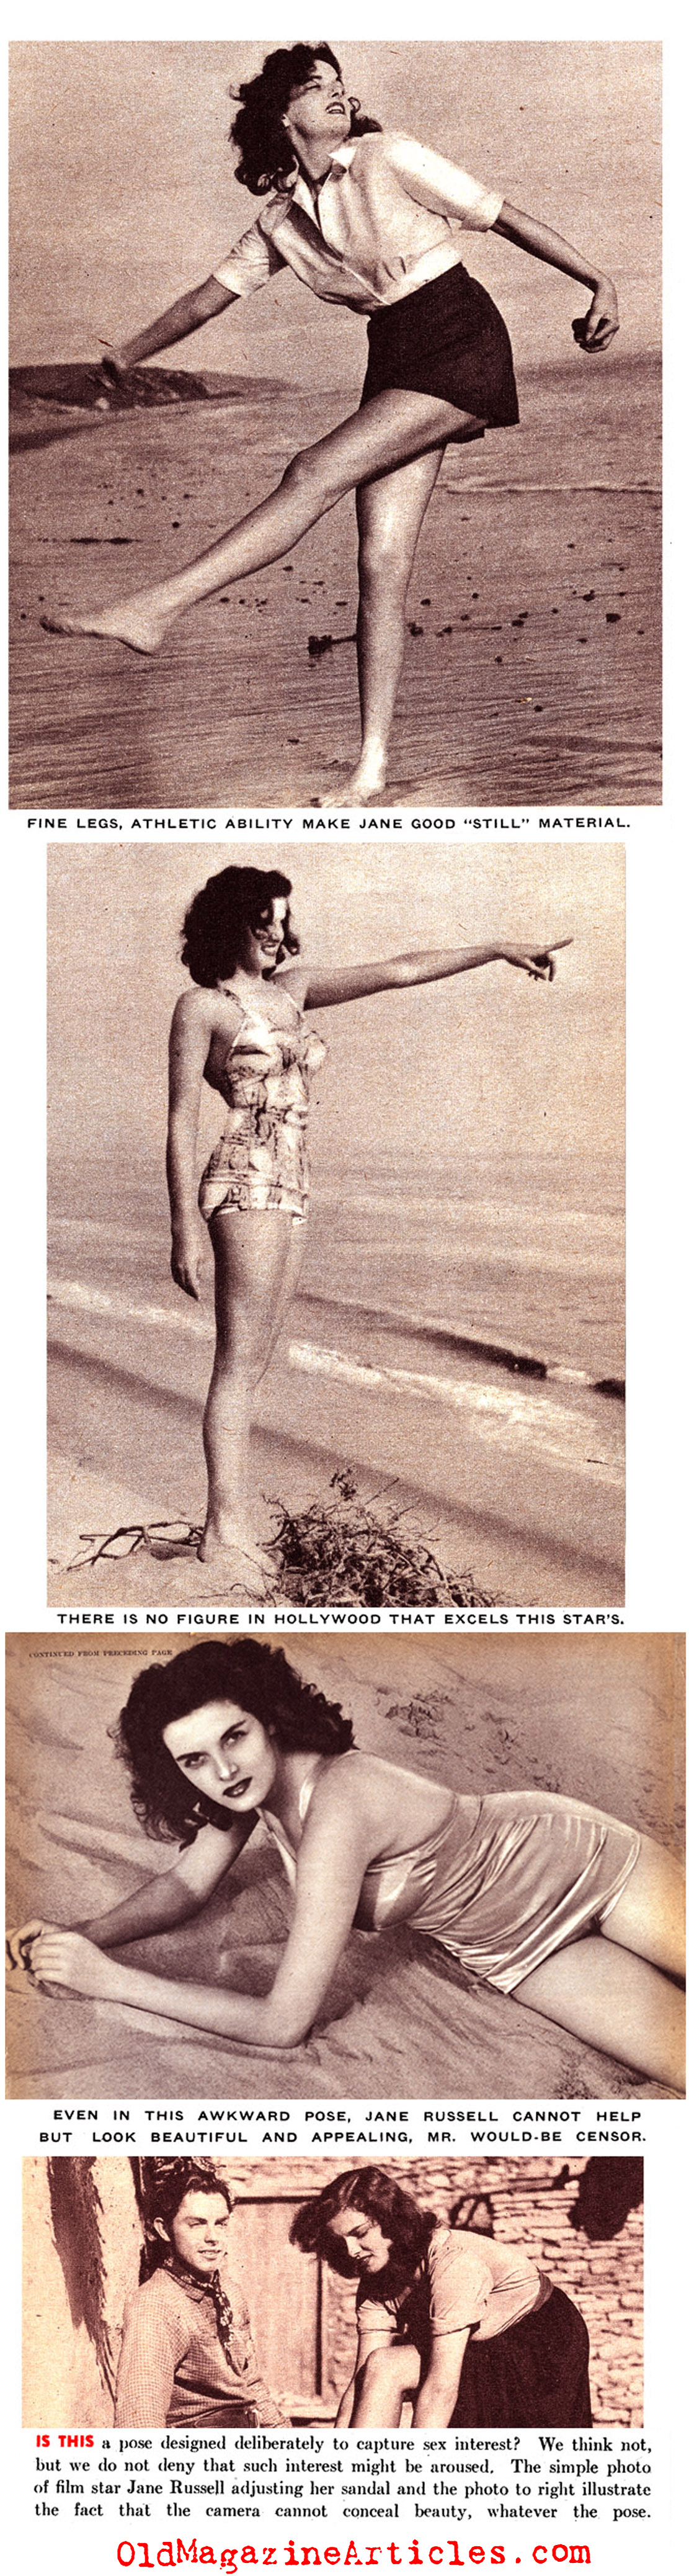 Jane Russell Sur la Plage... (Pic Magazine, 1941)